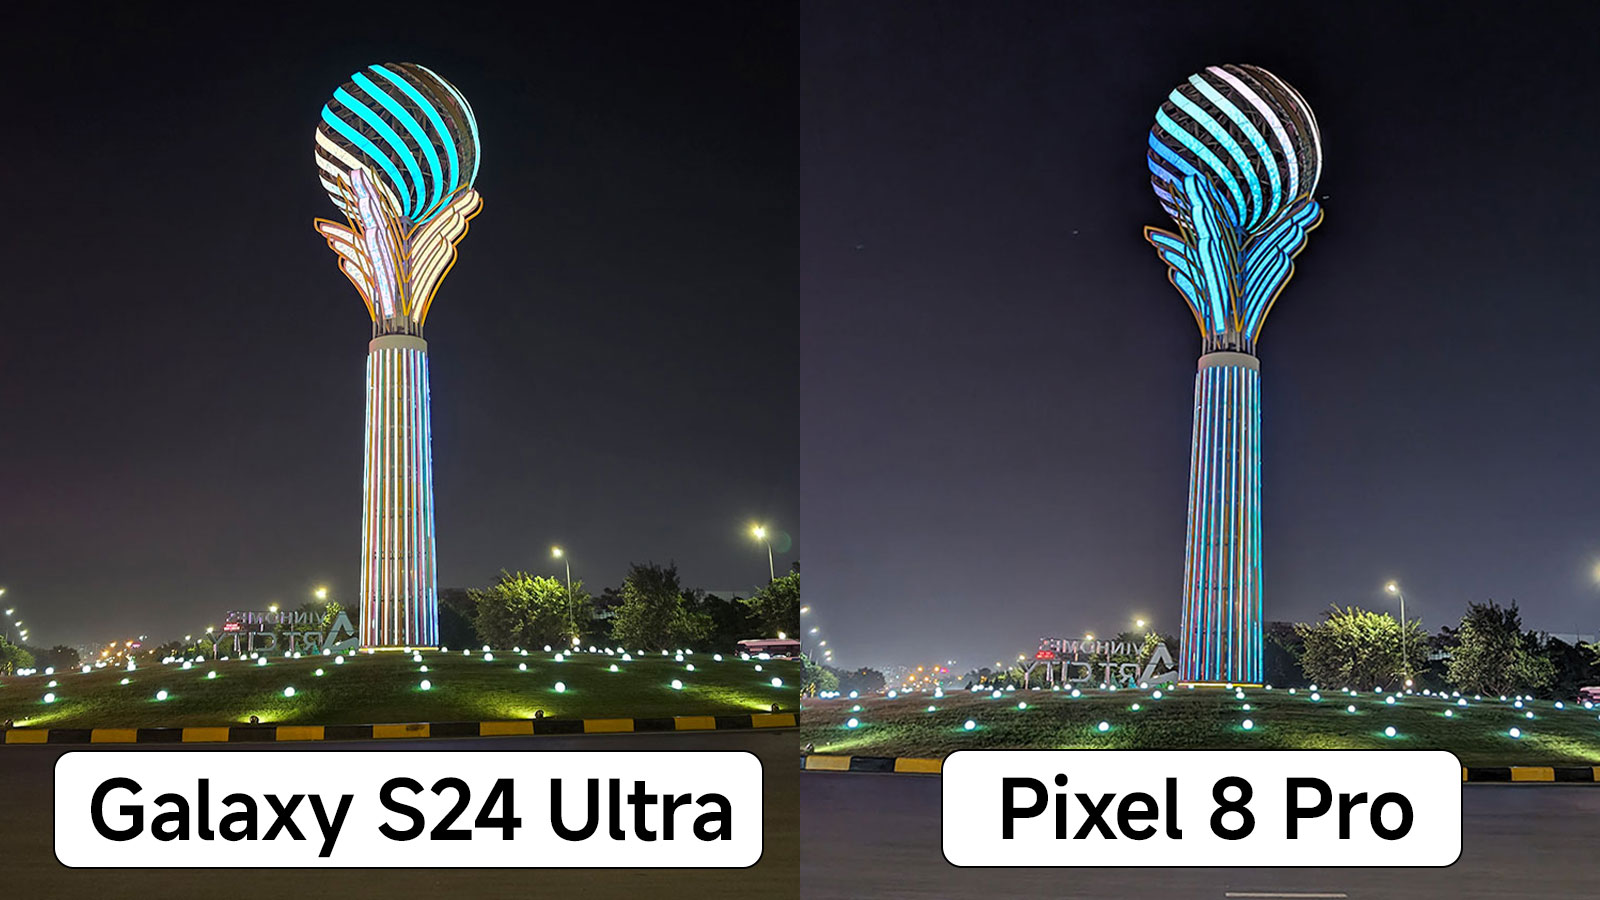 Bình chọn ảnh chụp từ Galaxy S24 Ultra và Pixel 8 Pro